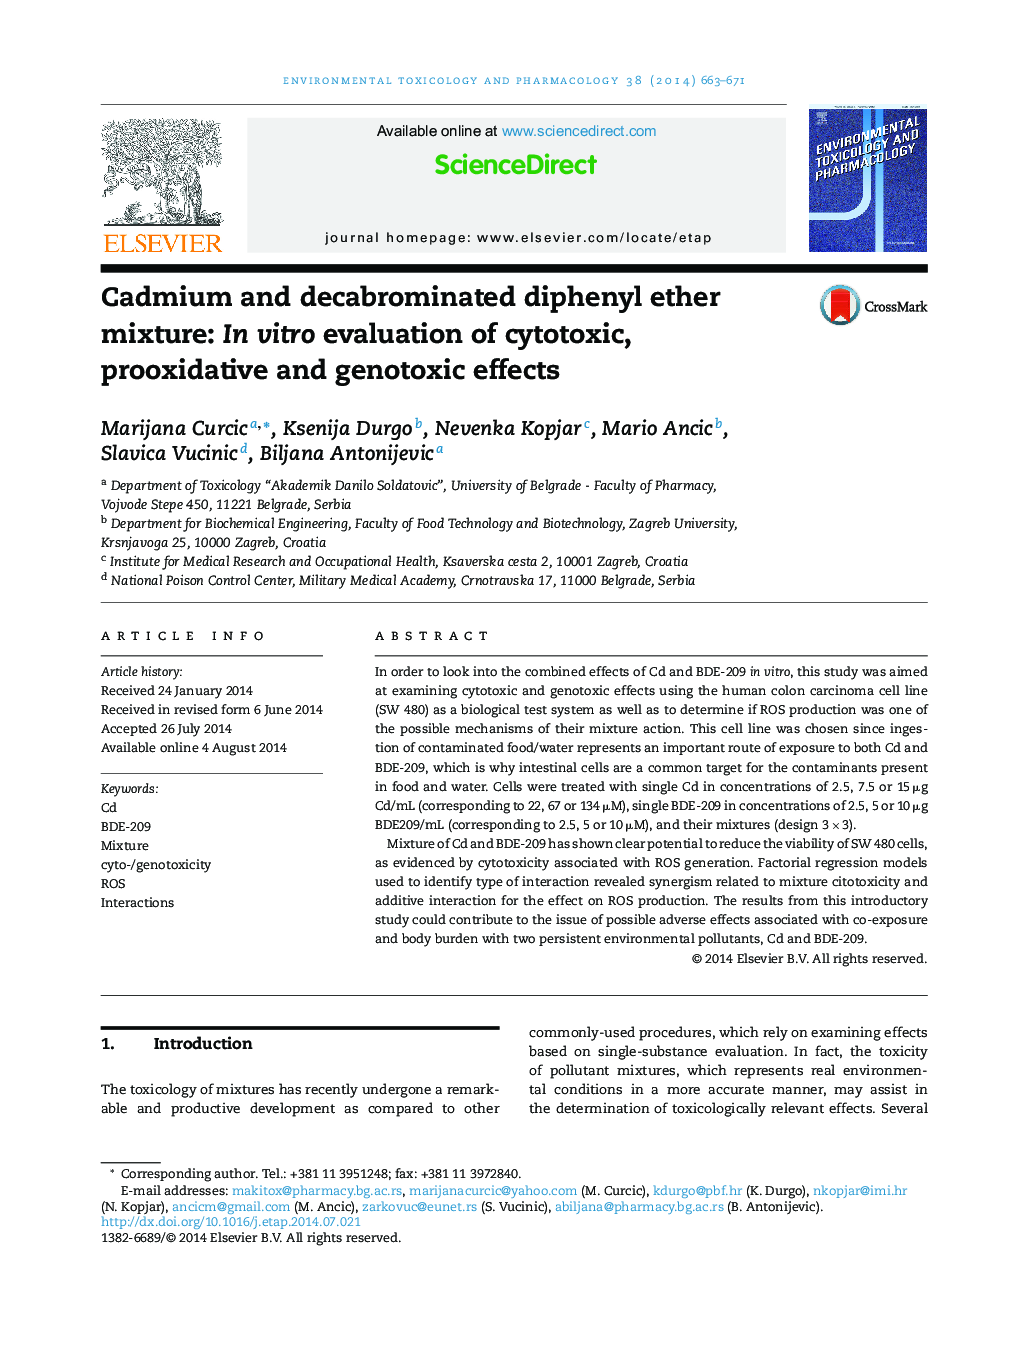 ترکیب کادمیوم و دکبروموتان دیفنیل اتر: ارزیابی اثرات سیتوتوکسیک، پروکسید کننده و ژنوتوکسیک 